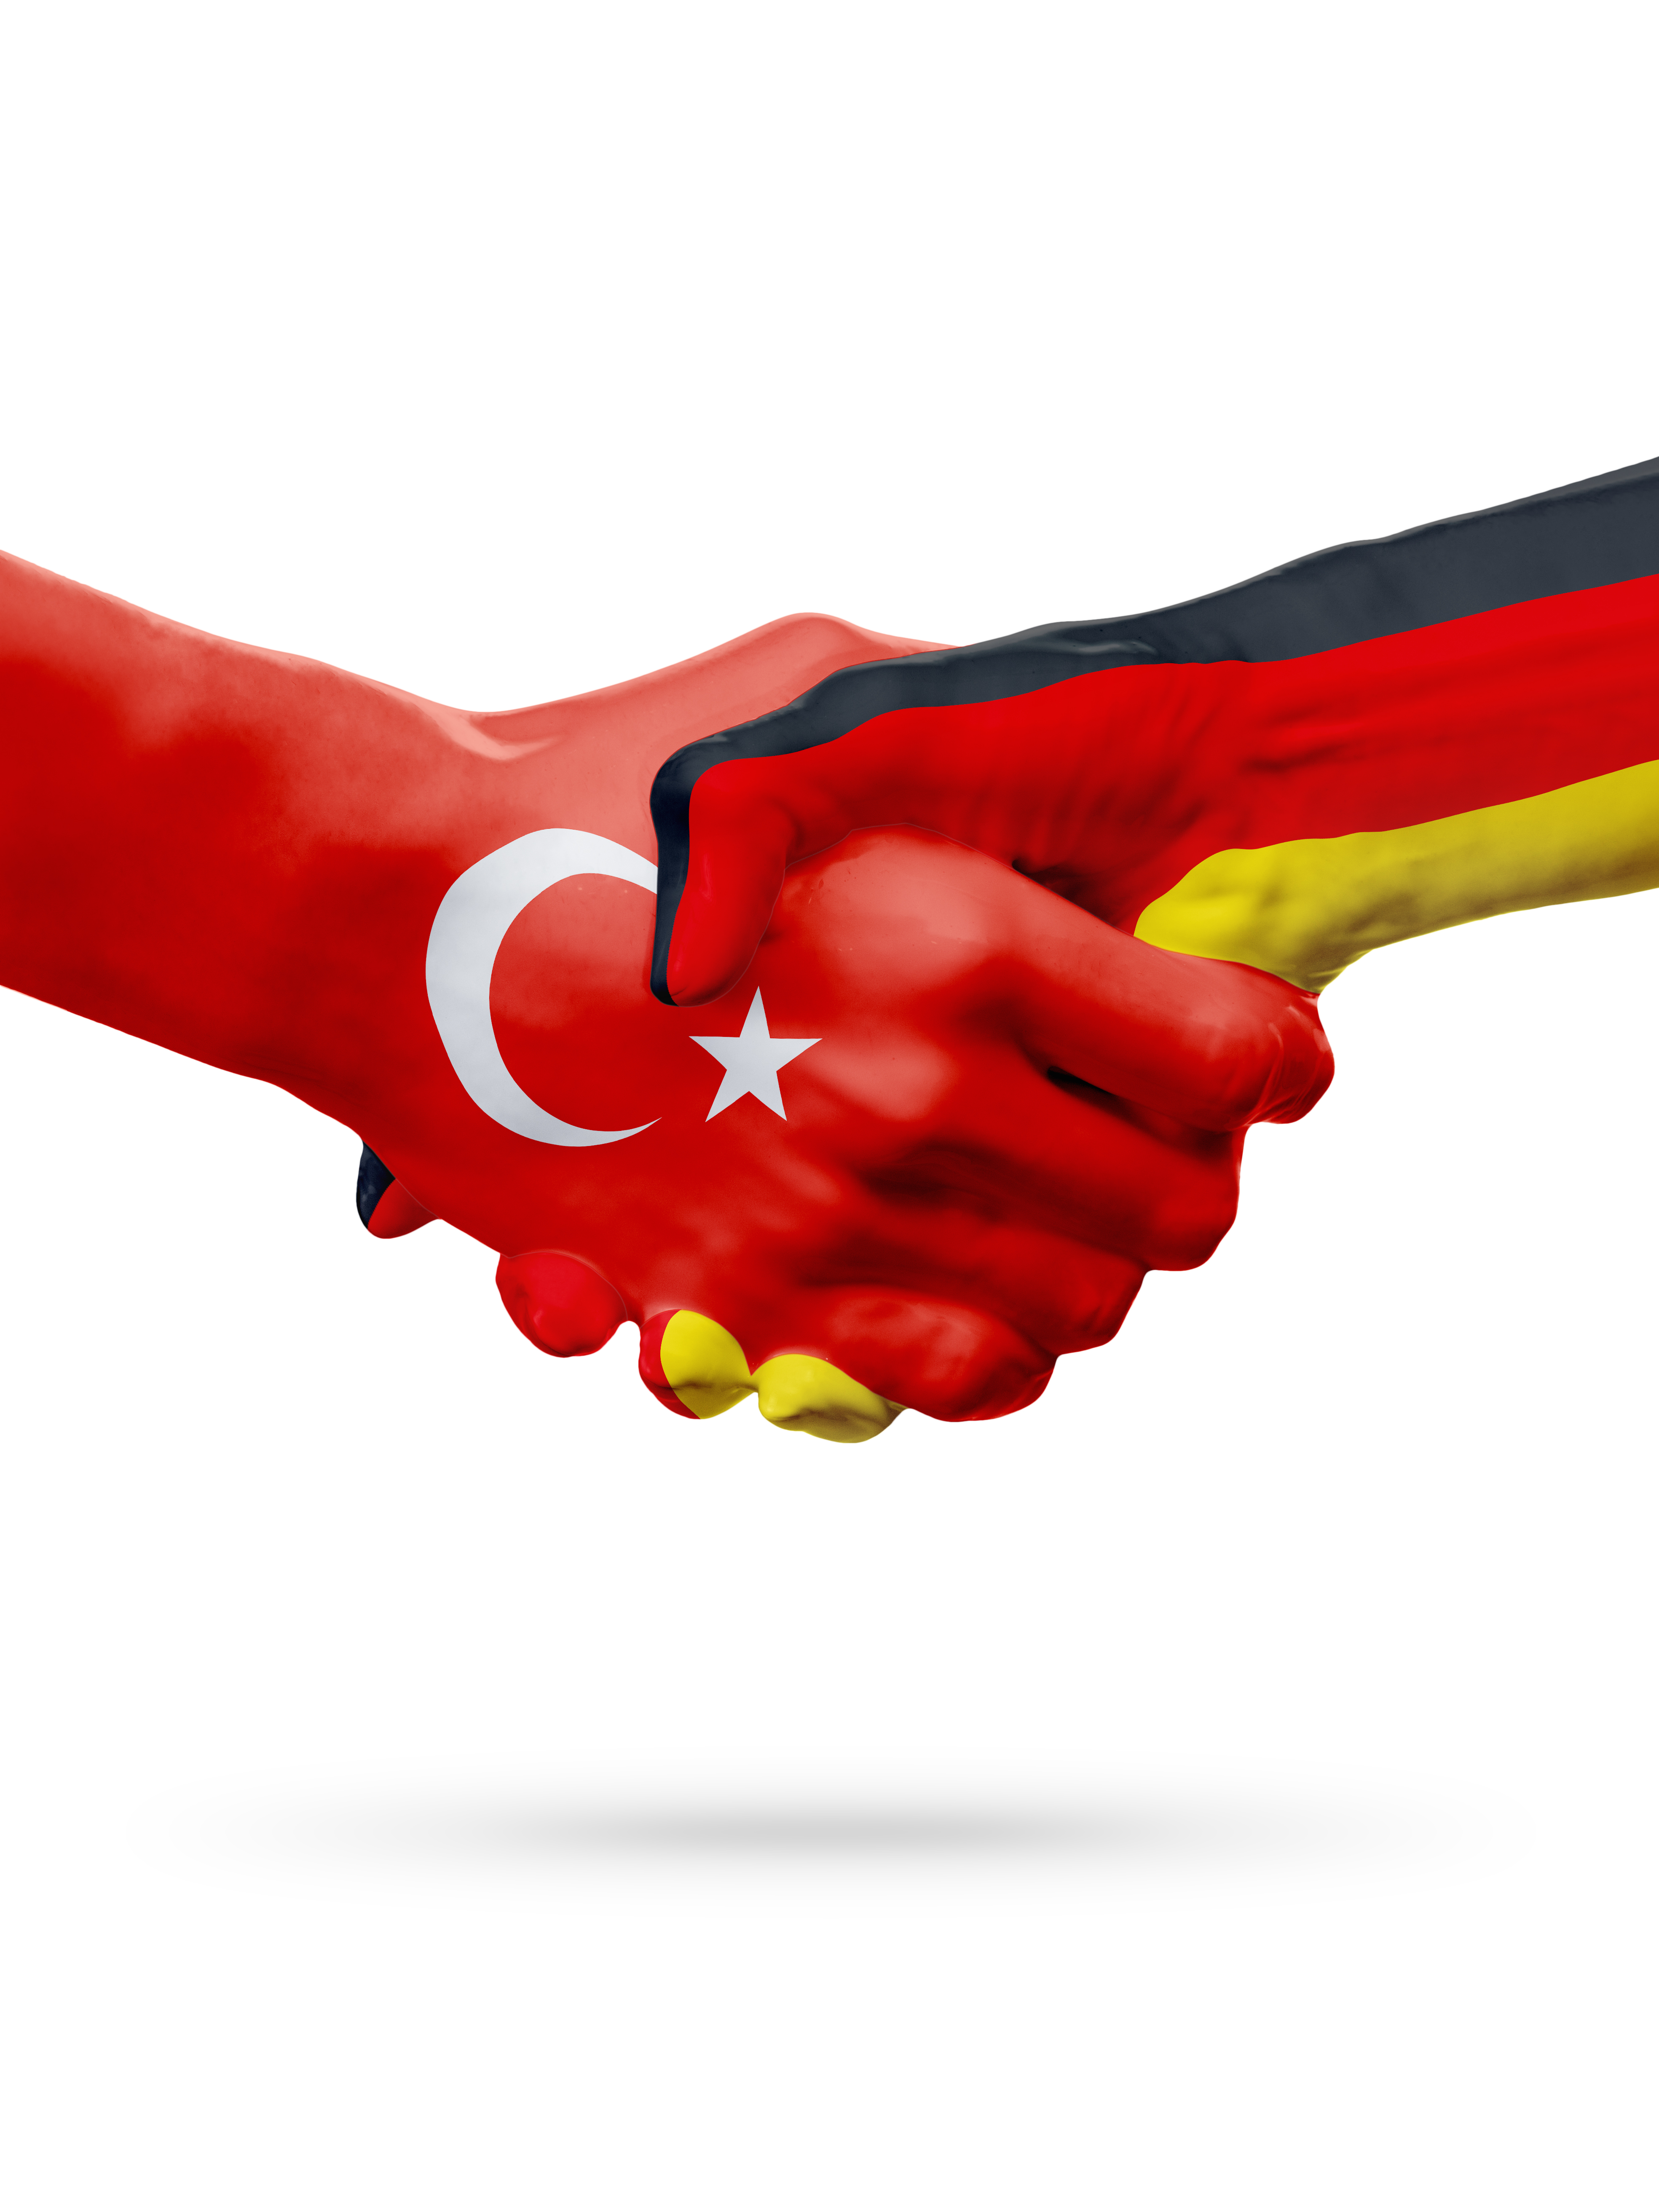 zwei Hände schlagen ein. Sie sind bemalt mit der türkischen und deutschen Flagge